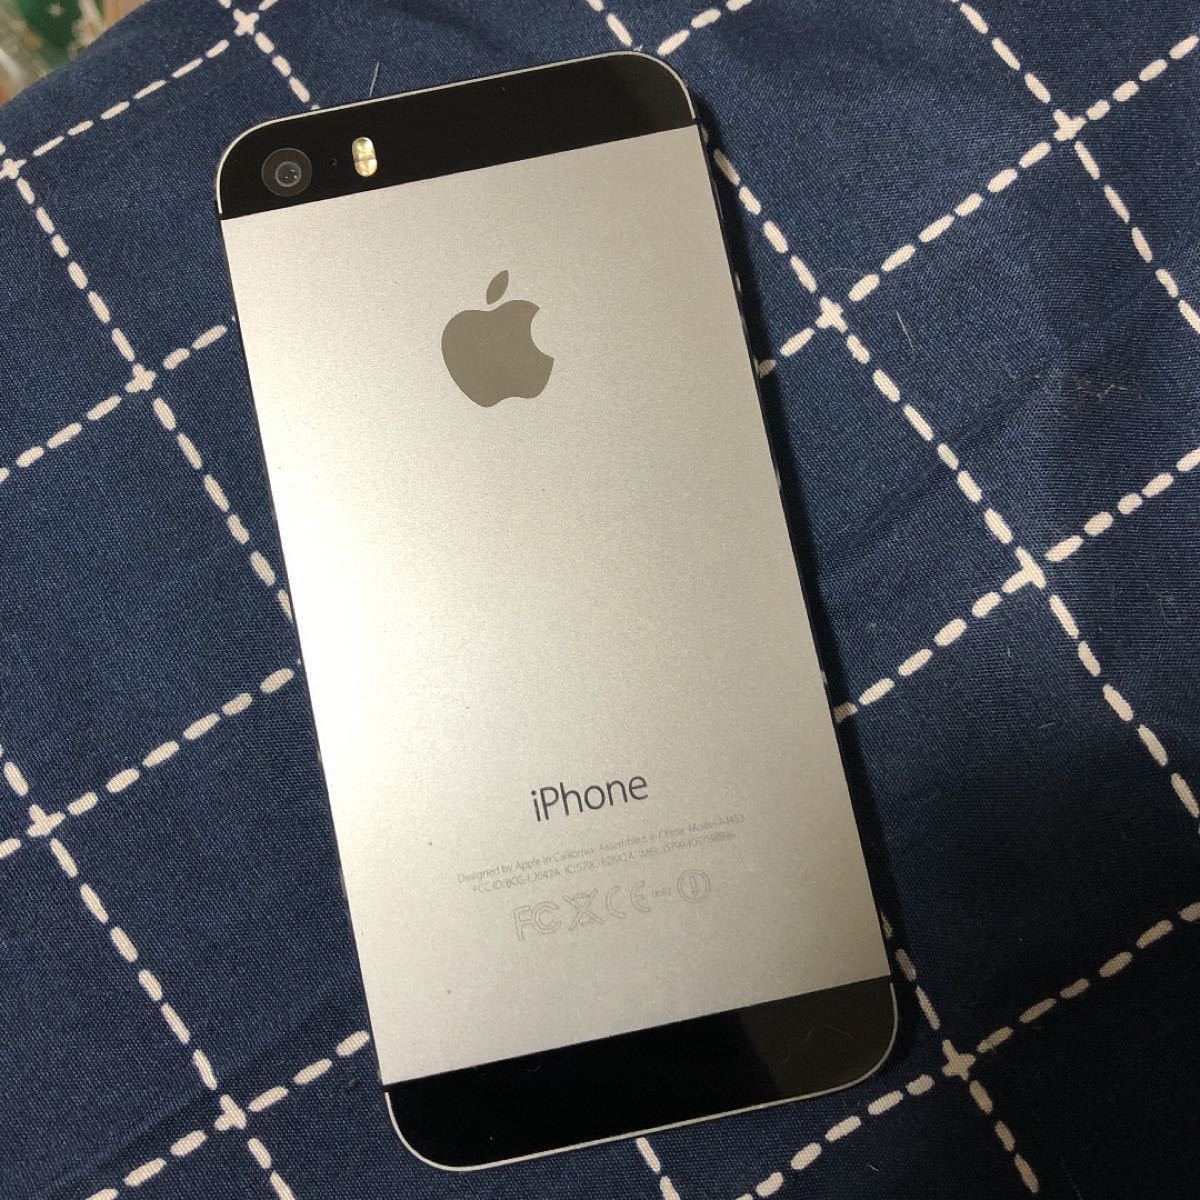 iPhone 5s【画面割れあり】